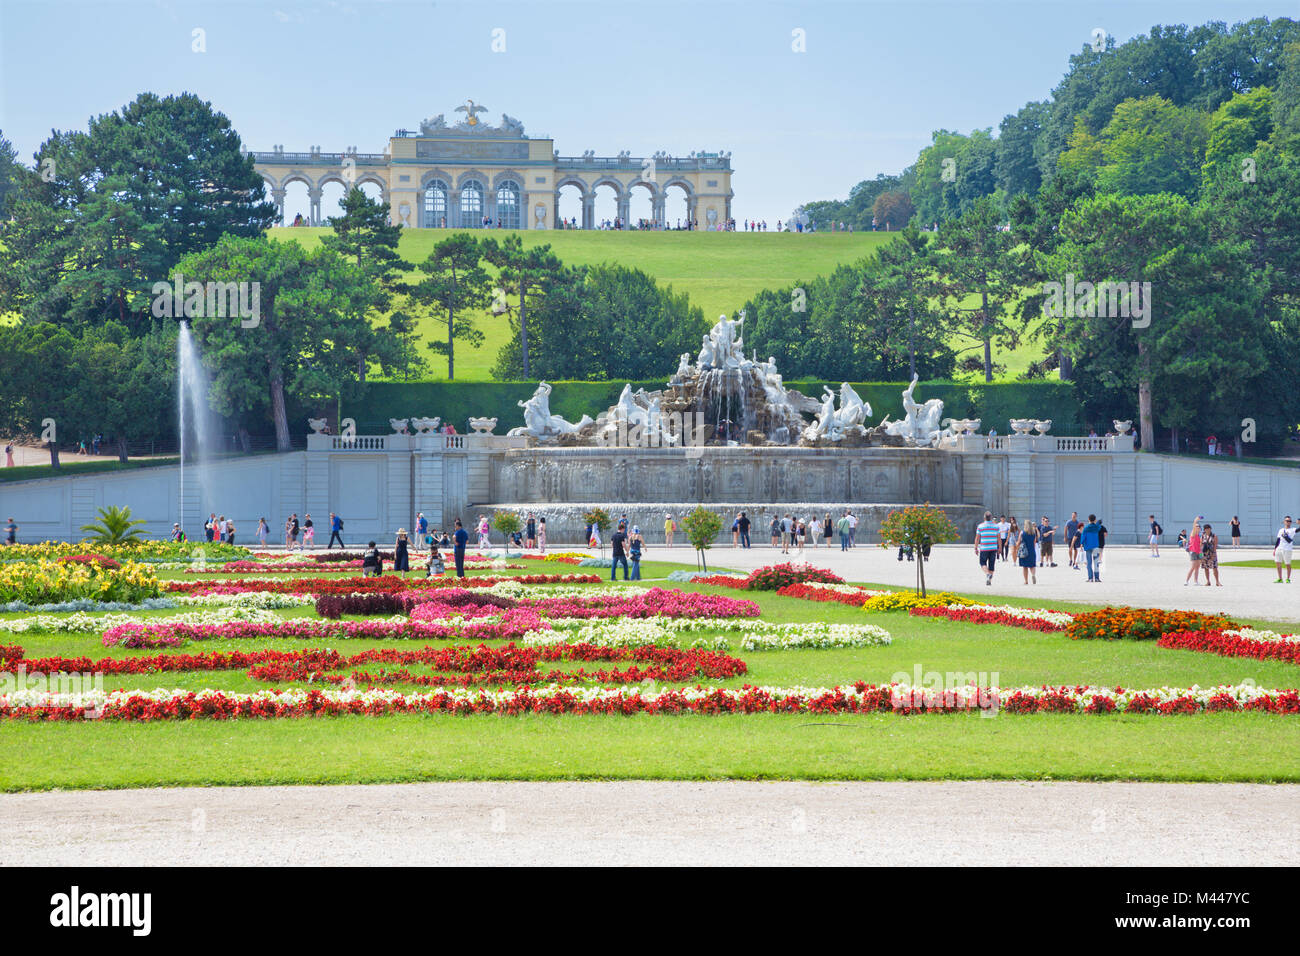 Vienne, Autriche - 30 juillet 2014 : Le château de Schönbrunn - Chapelle du château et jardin et fontaine de Neptune. Banque D'Images